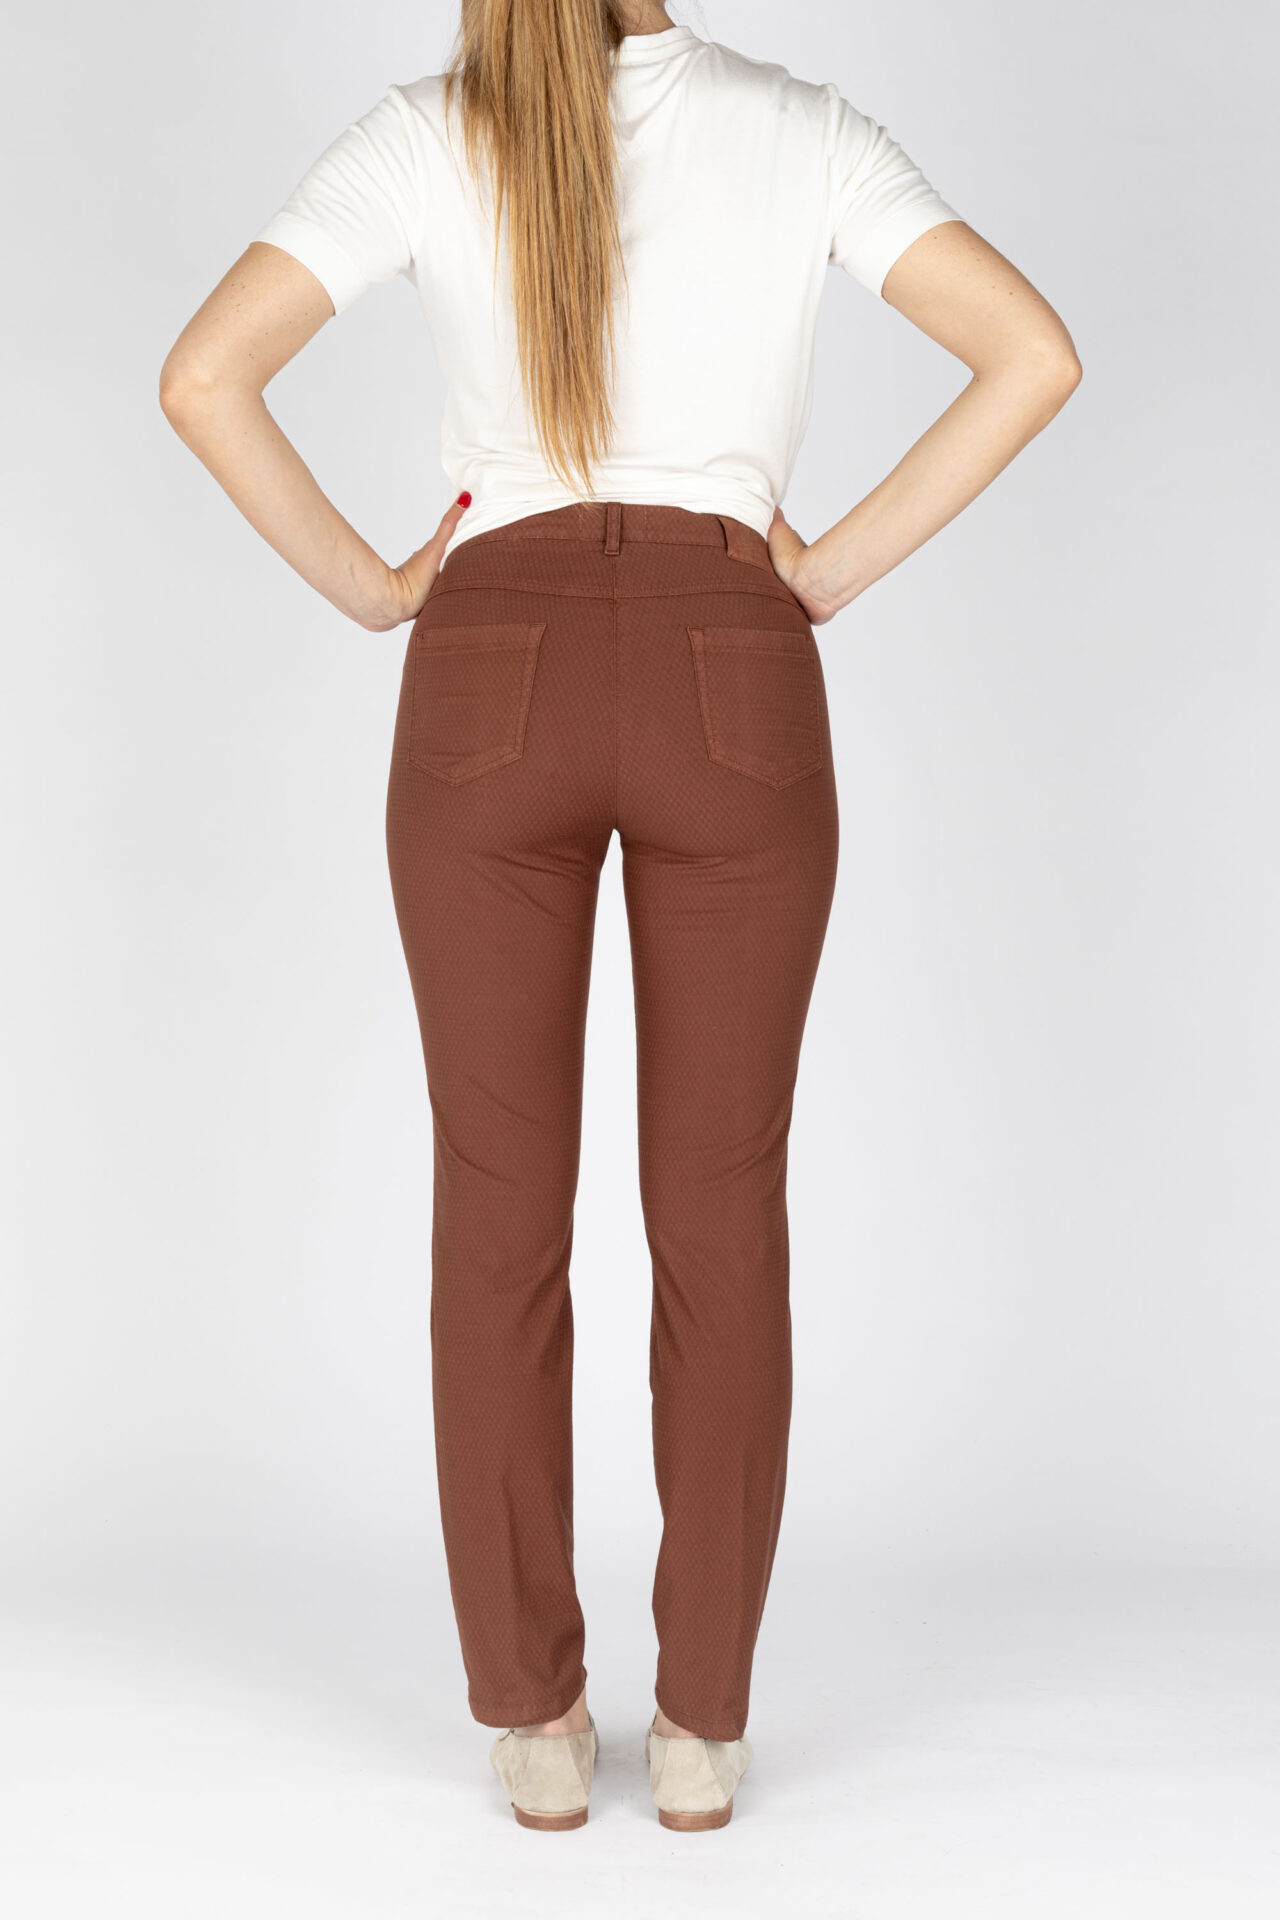 Pantaloni linea jeans colore biscotto tessuto cotone armaturato